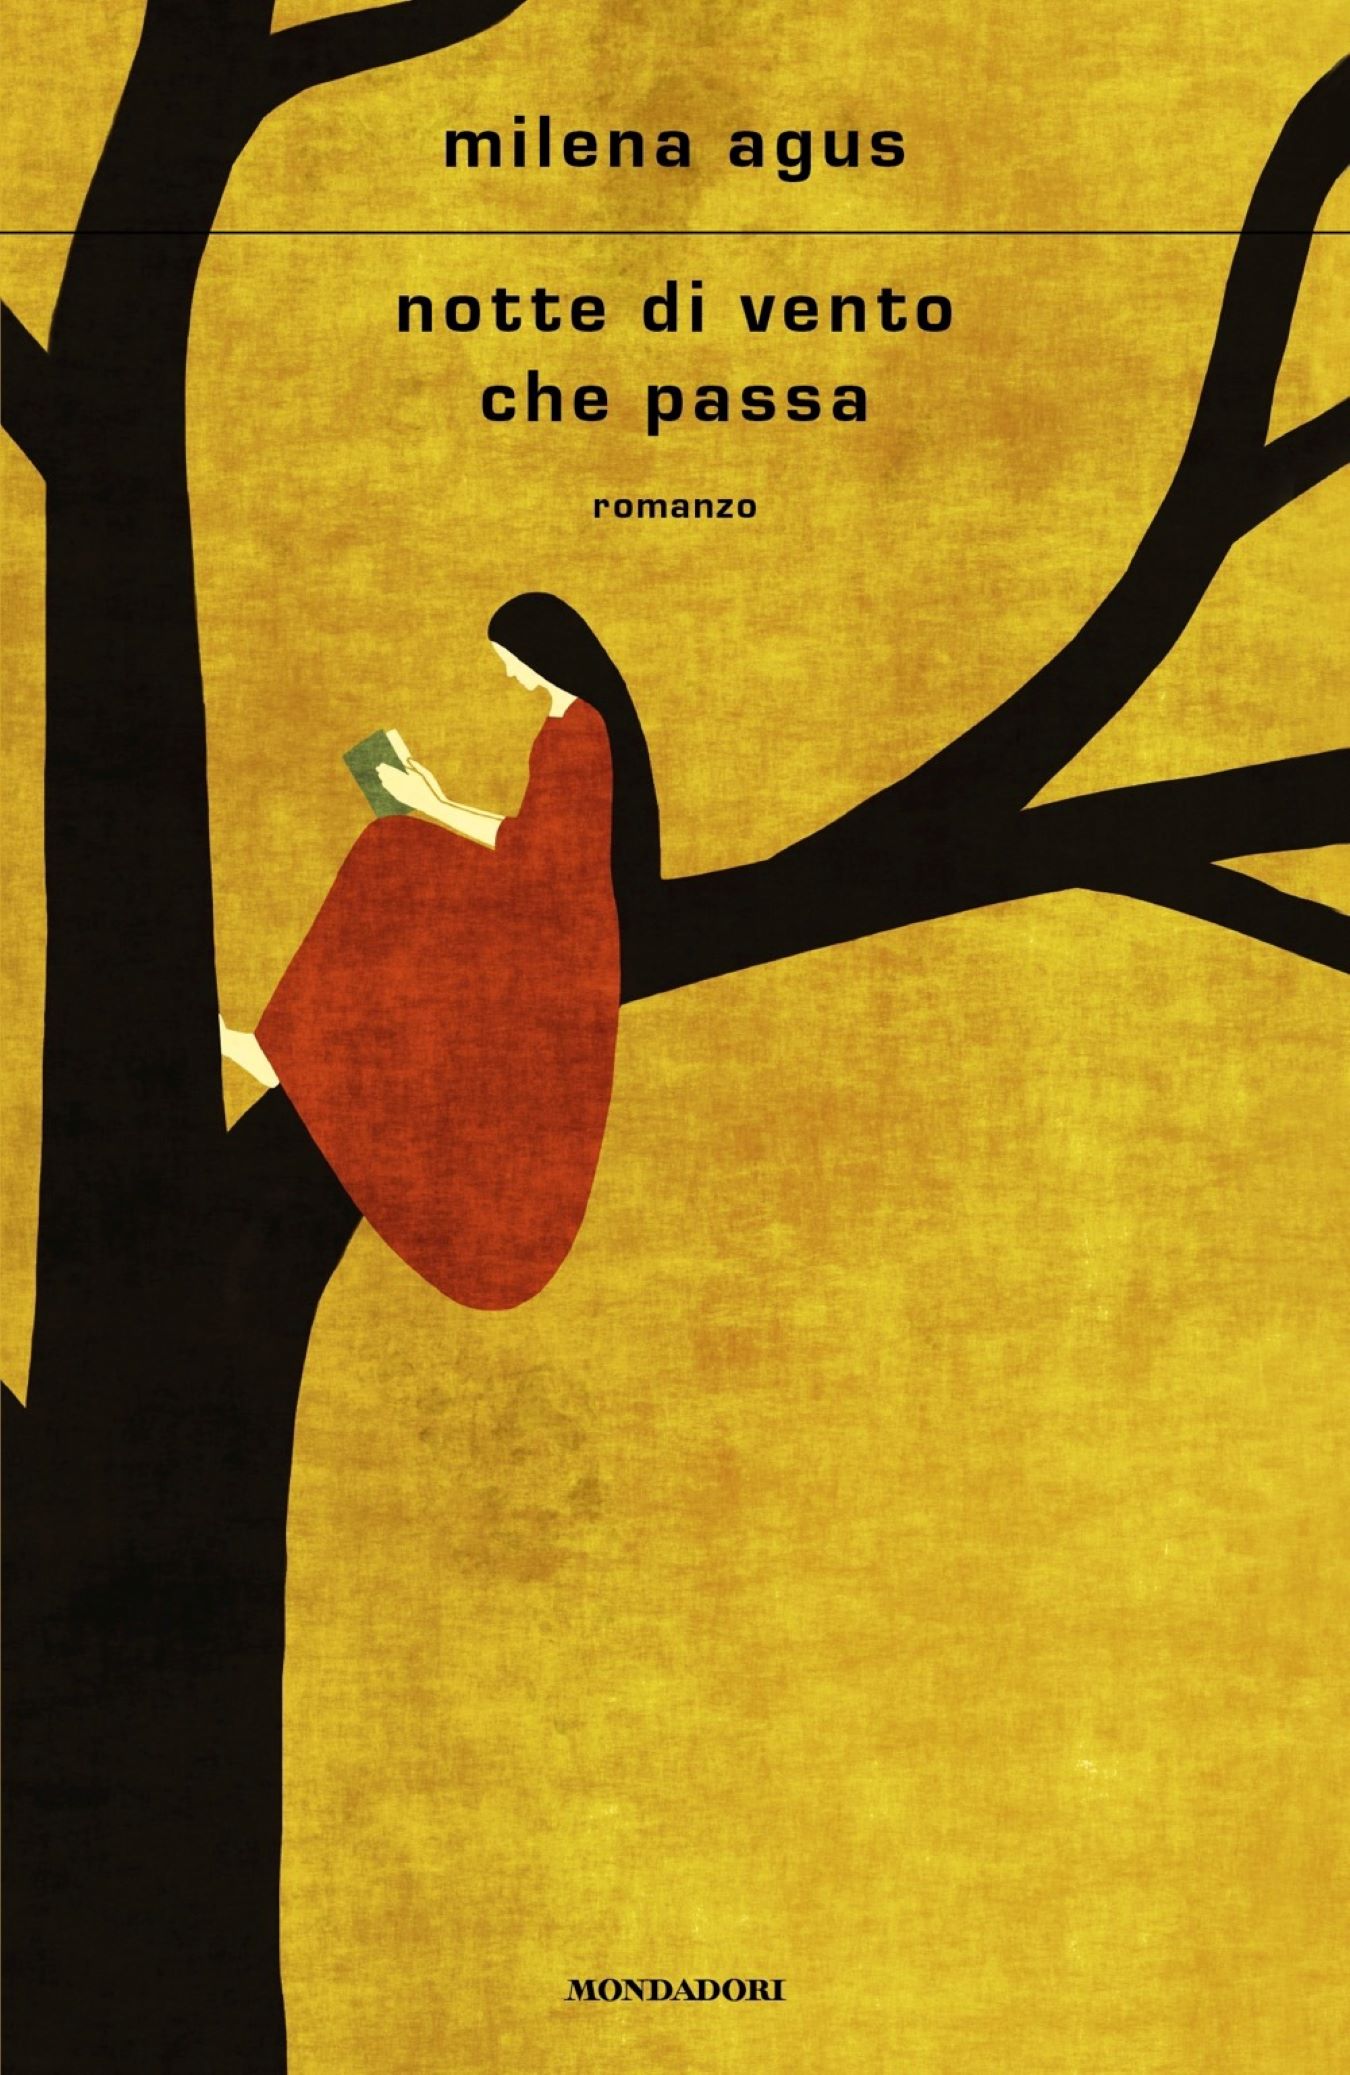 “Notte di vento che passa”, Milena Agus presenta il suo ultimo romanzo. Appuntamento domani al Teatro Massimo